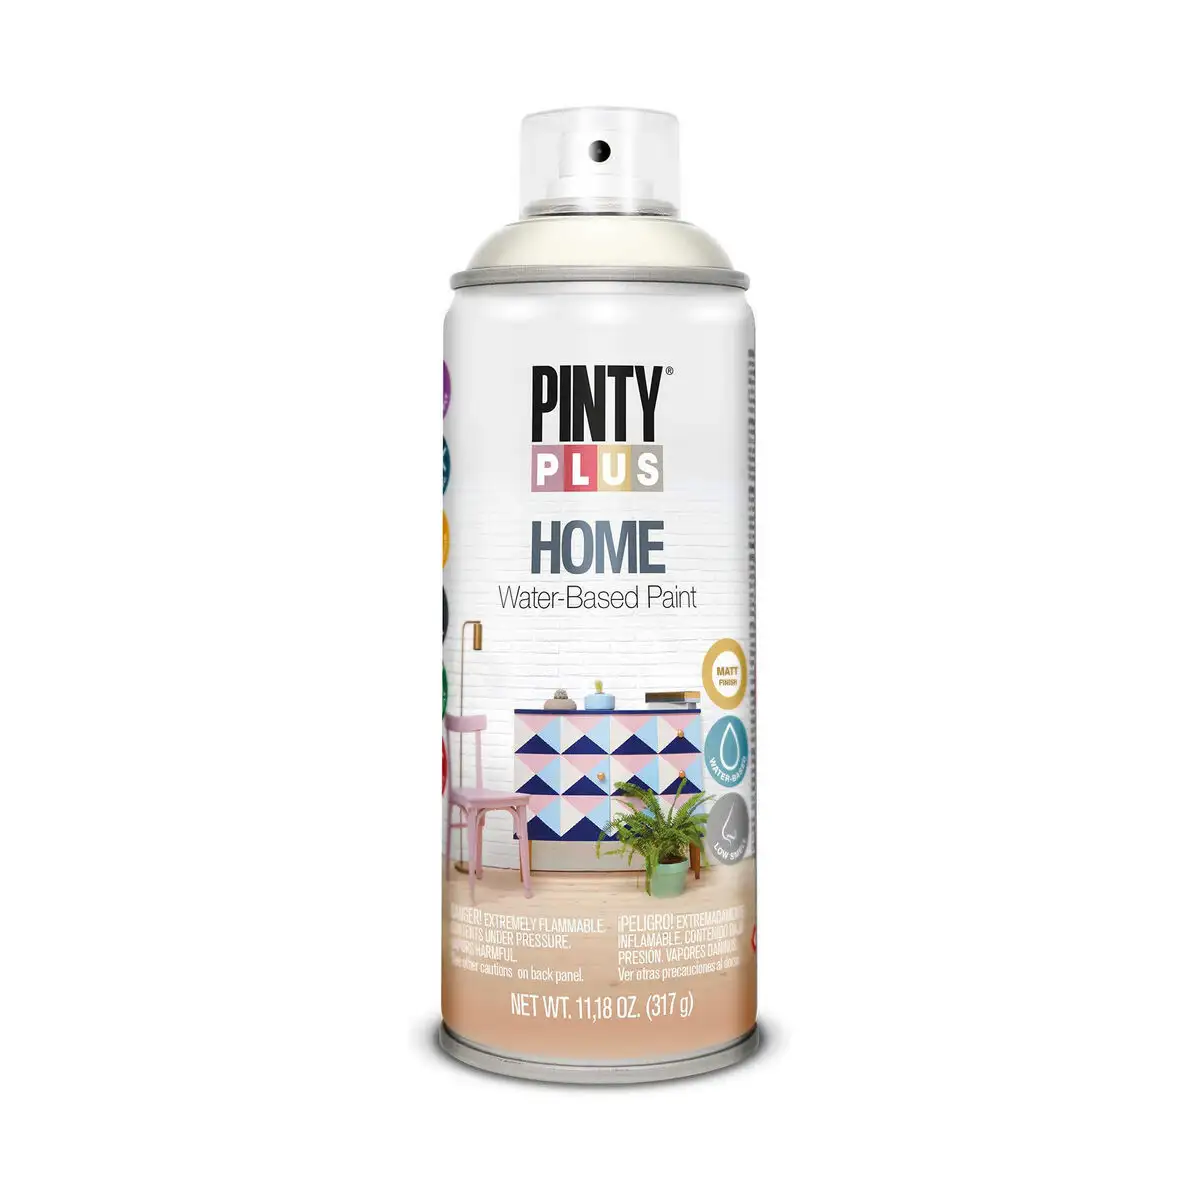 Peinture en spray pintyplus home hm112 400 ml white milk_6550. DIAYTAR SENEGAL - L'Art de Choisir, l'Art de Se Distinquer. Naviguez à travers notre catalogue et choisissez des produits qui ajoutent une note d'élégance à votre style unique.